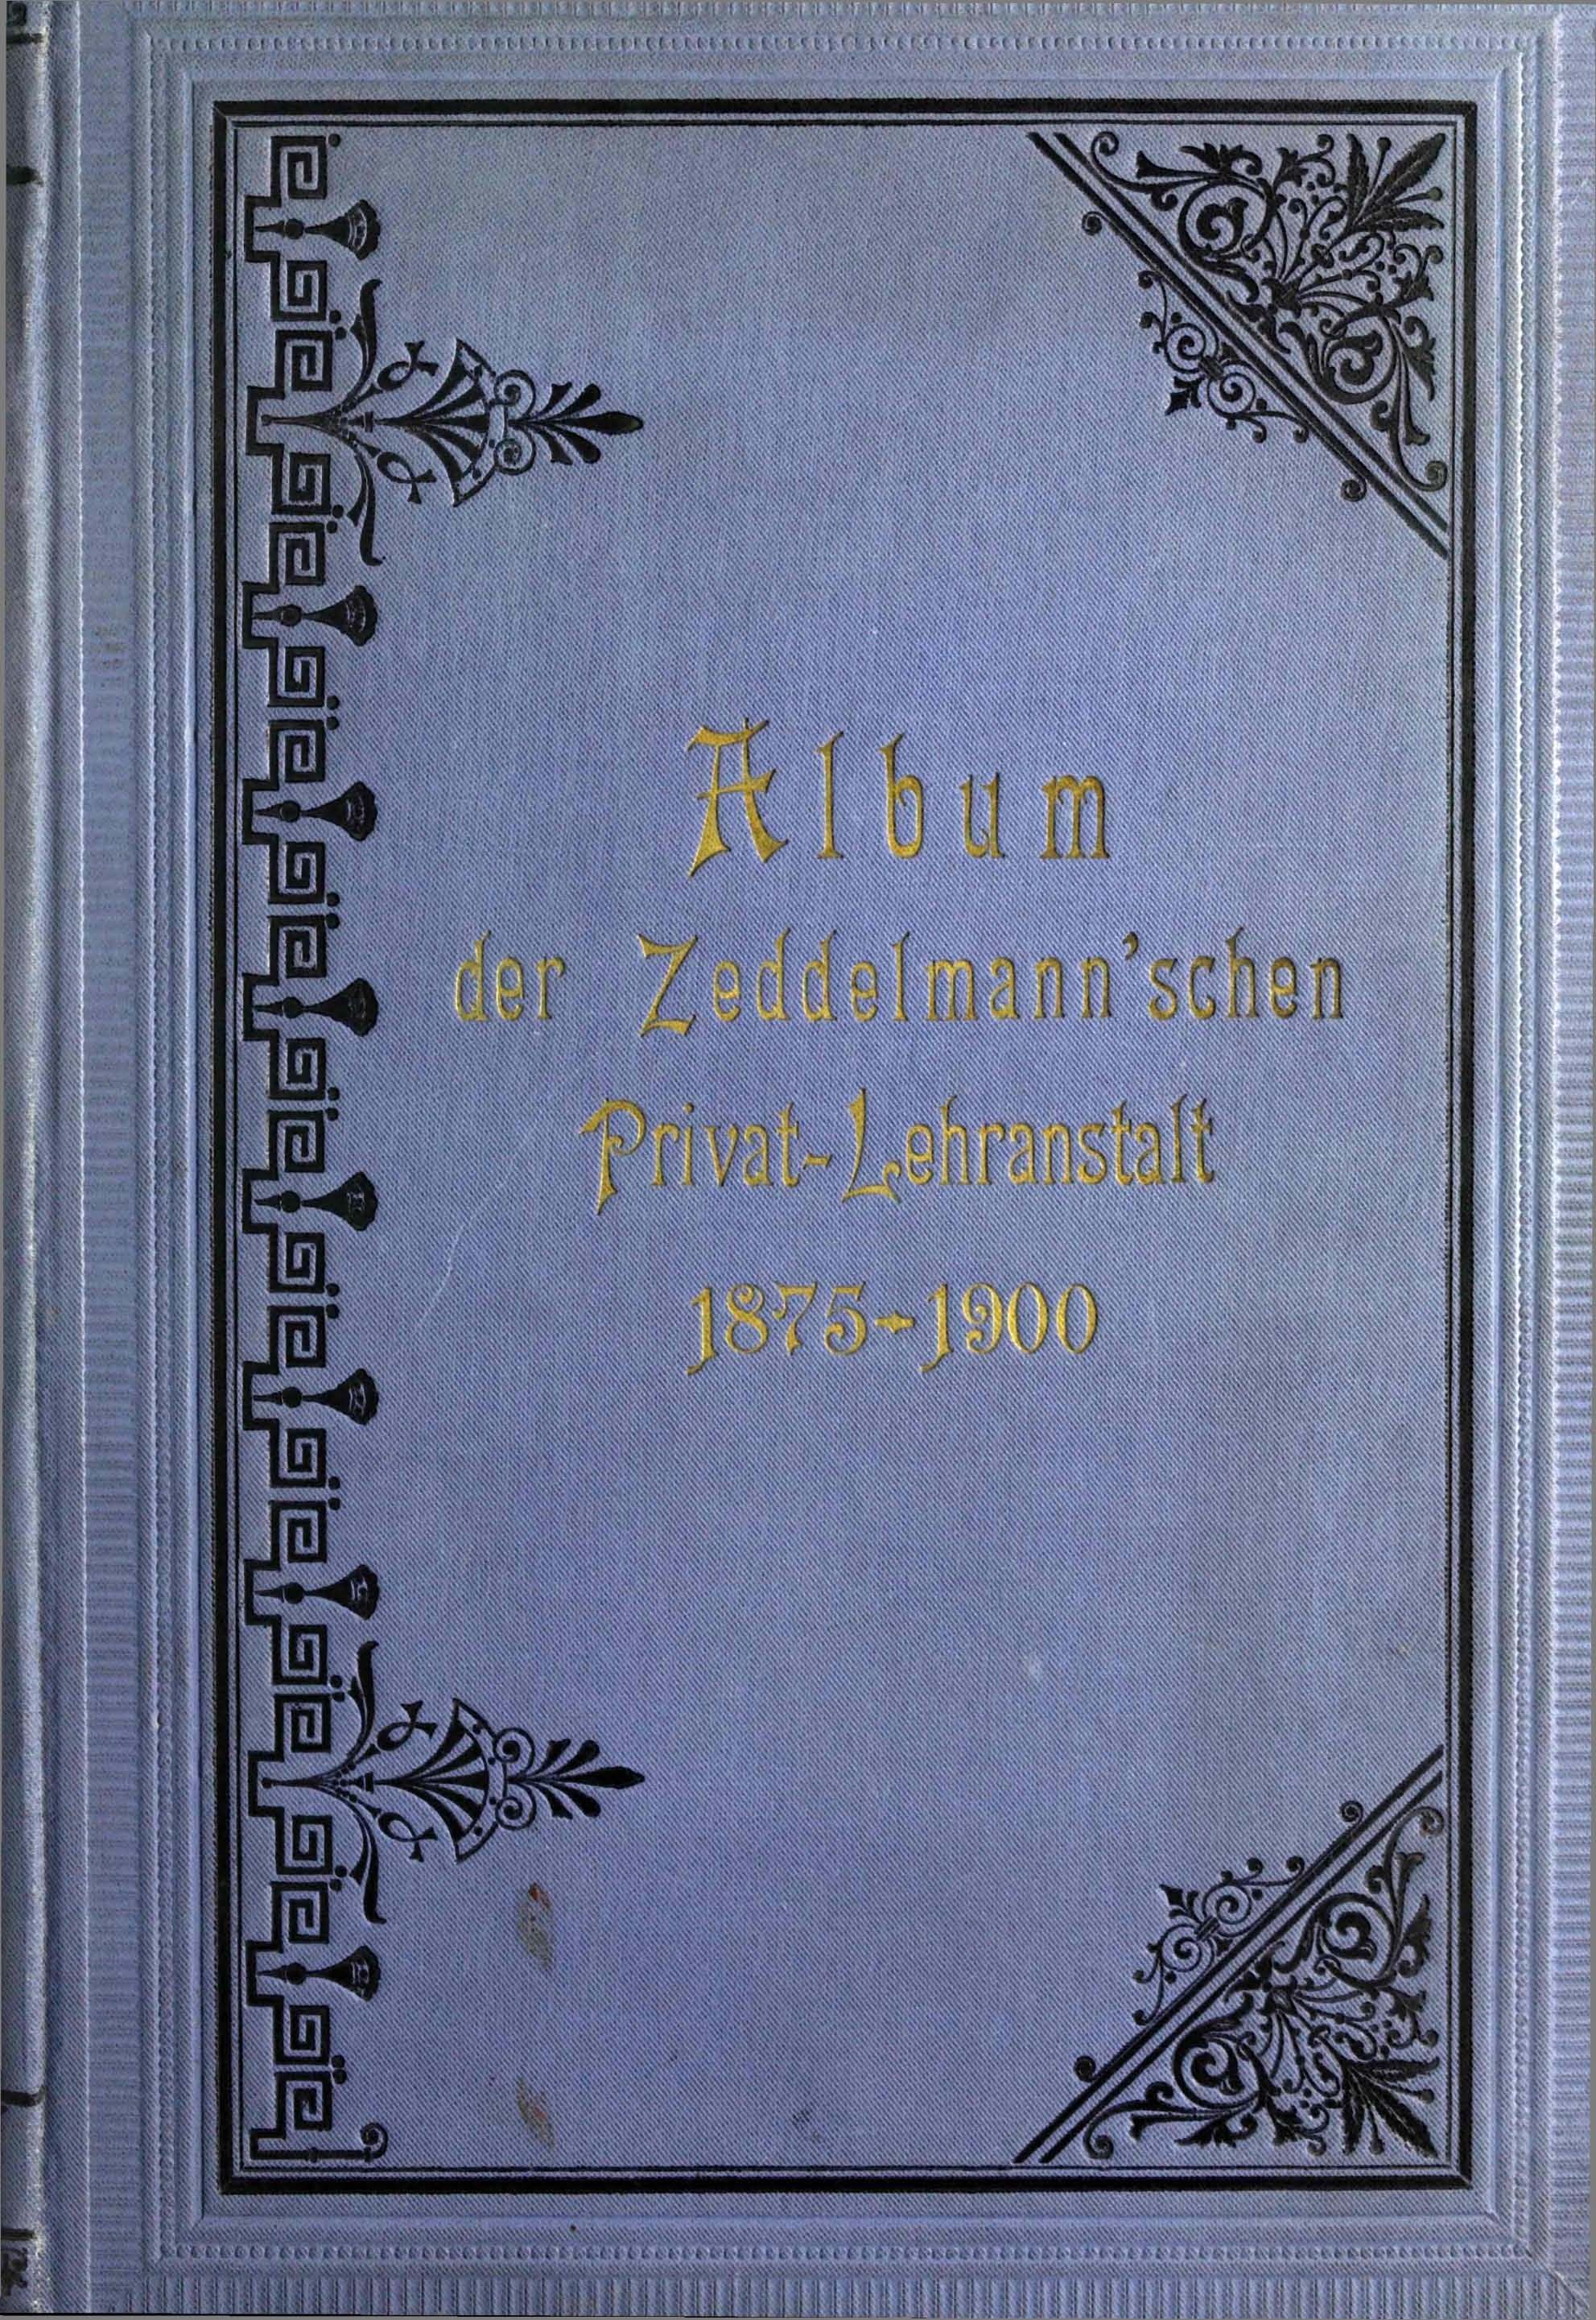 Die Zeddelmannsche Privat-Lehranstalt (1900) | 1. Front cover